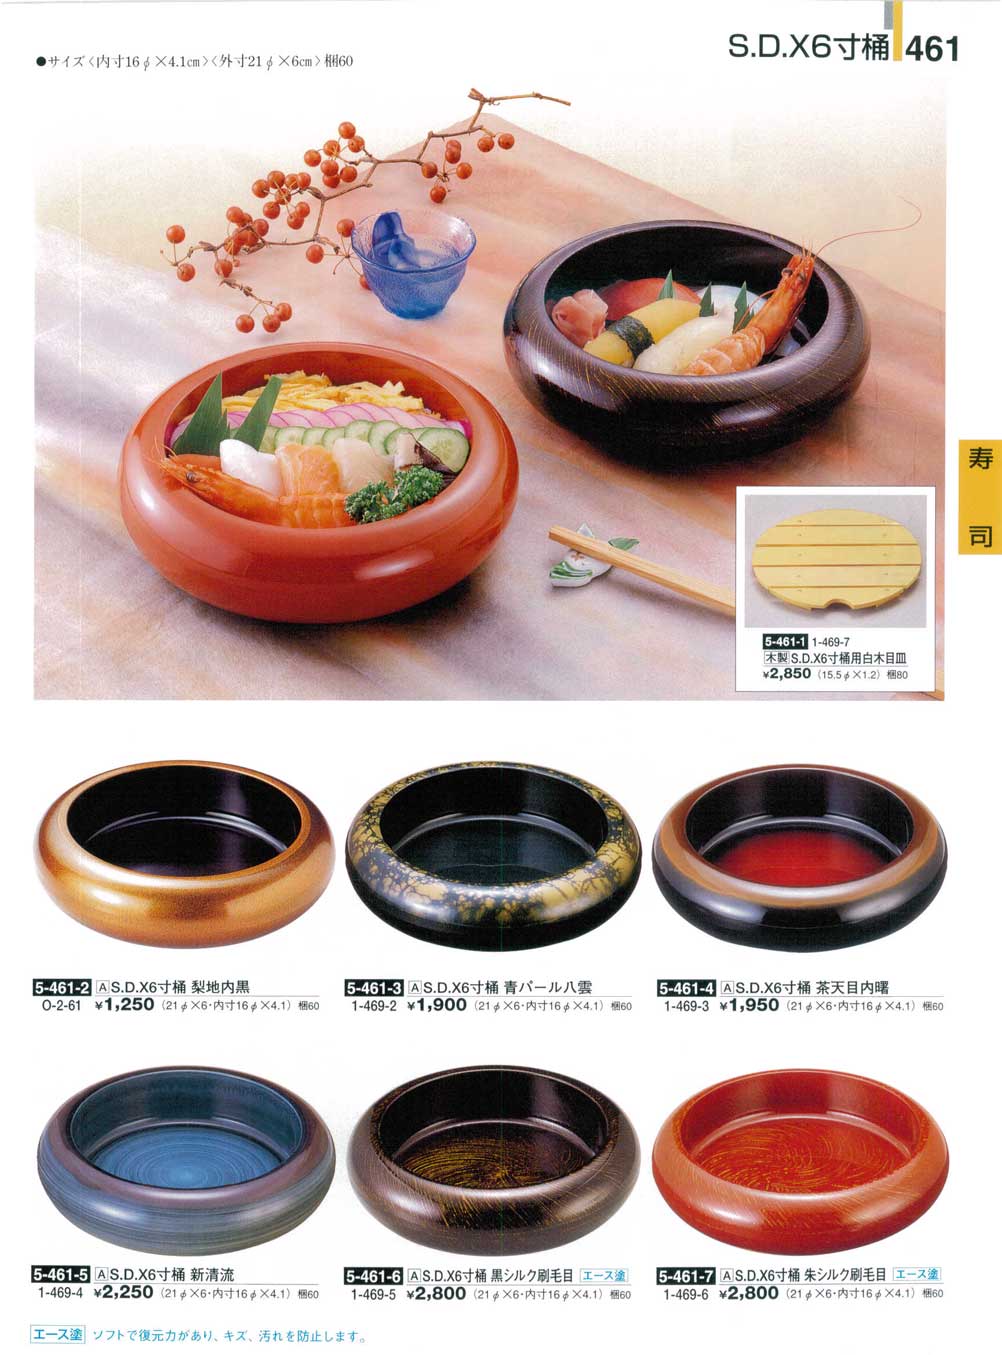 食器 寿司桶・Ｓ.Ｄ.Ｘ６寸桶割烹漆器２５－461ページ